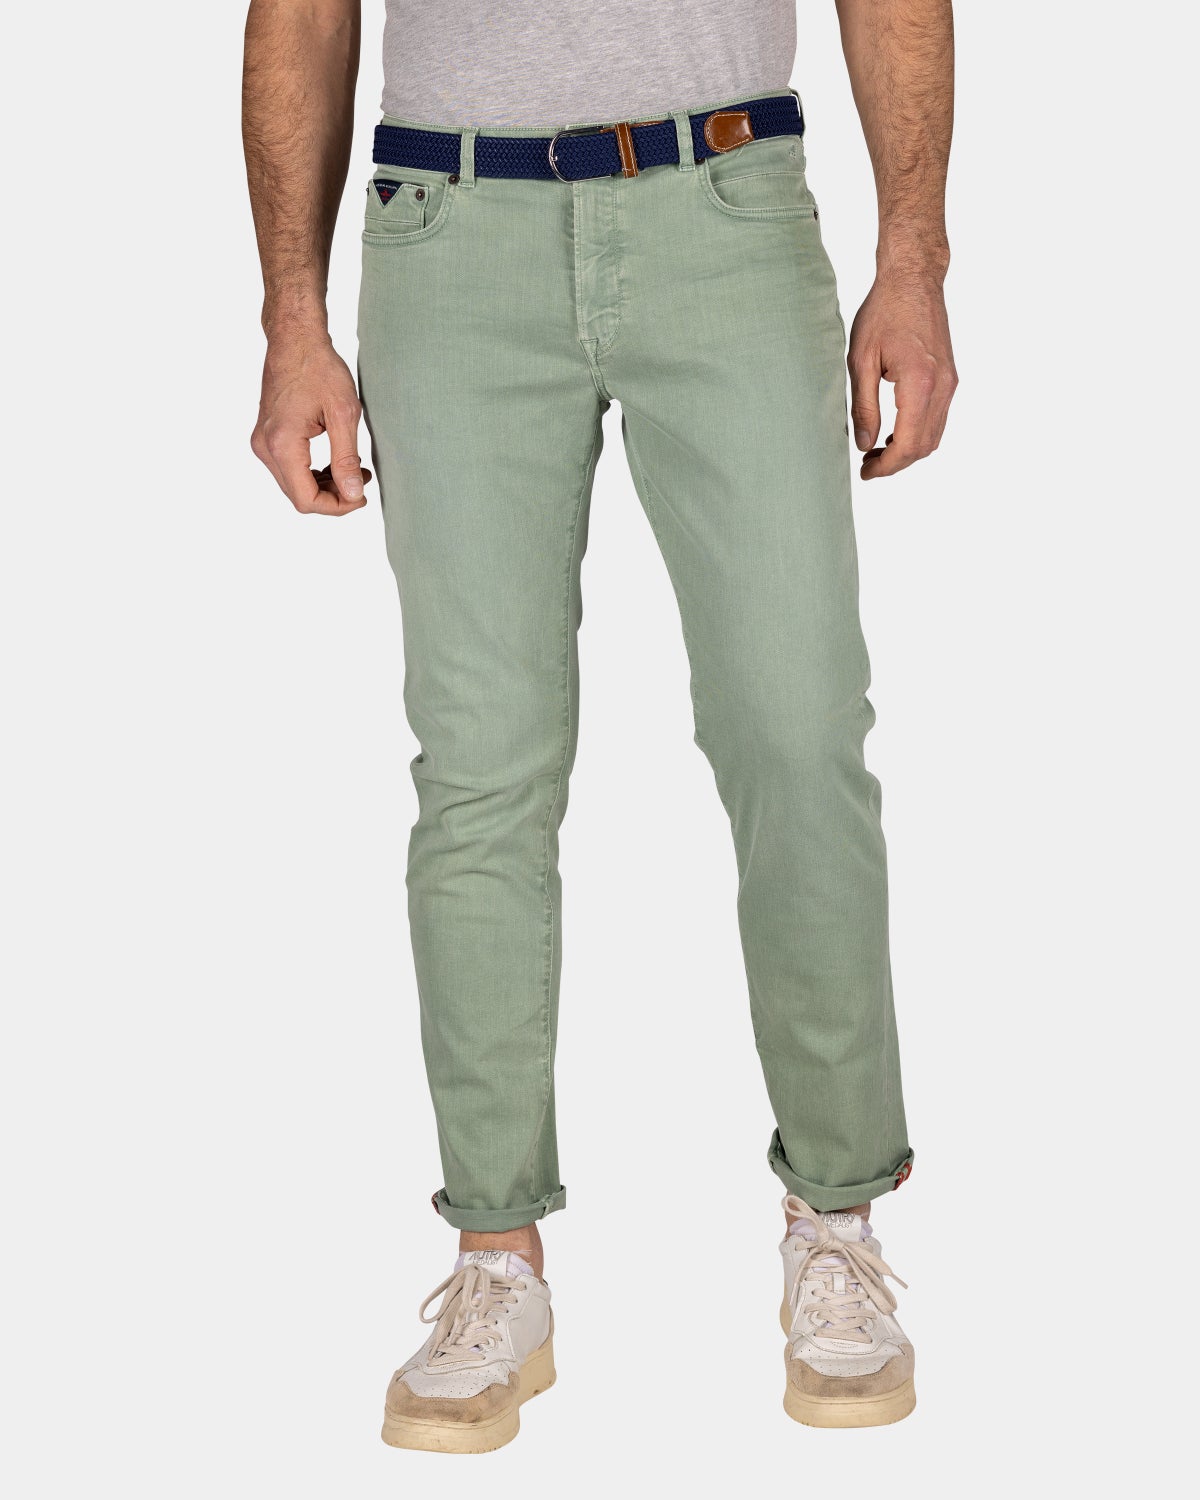 Green 5 pocket jeans - Sage